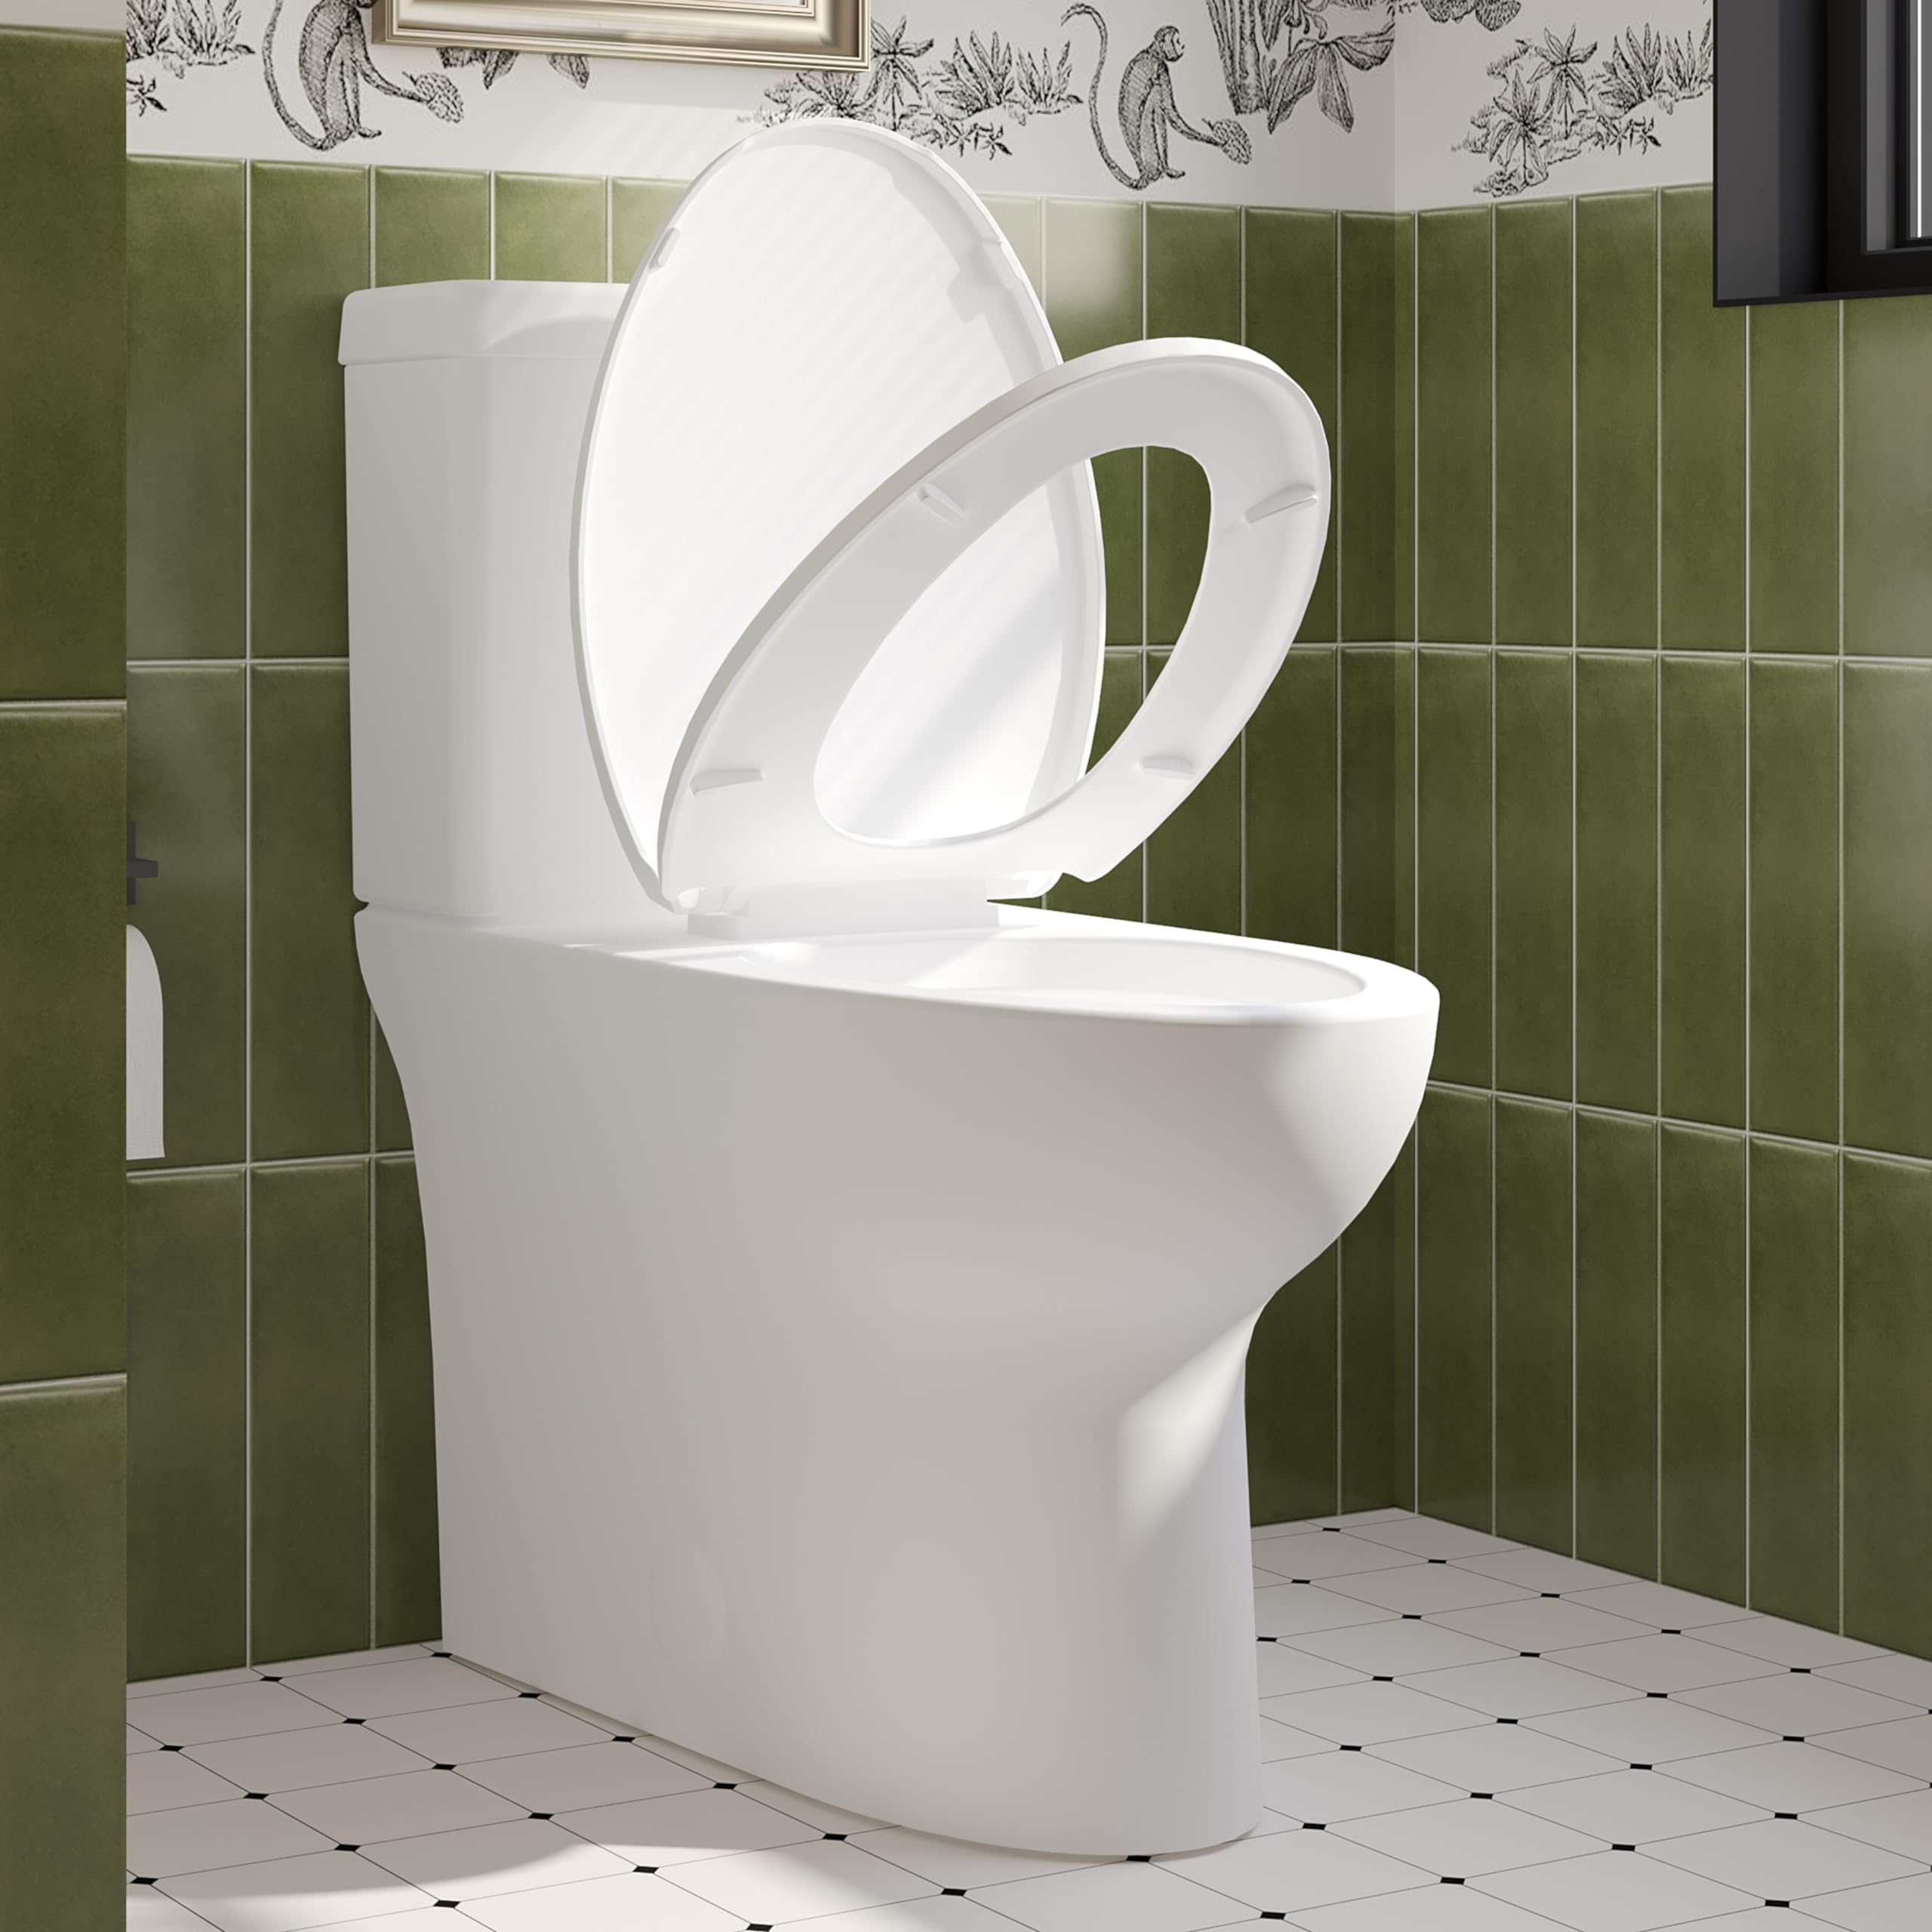 ELLAI Dual Flush Toilet